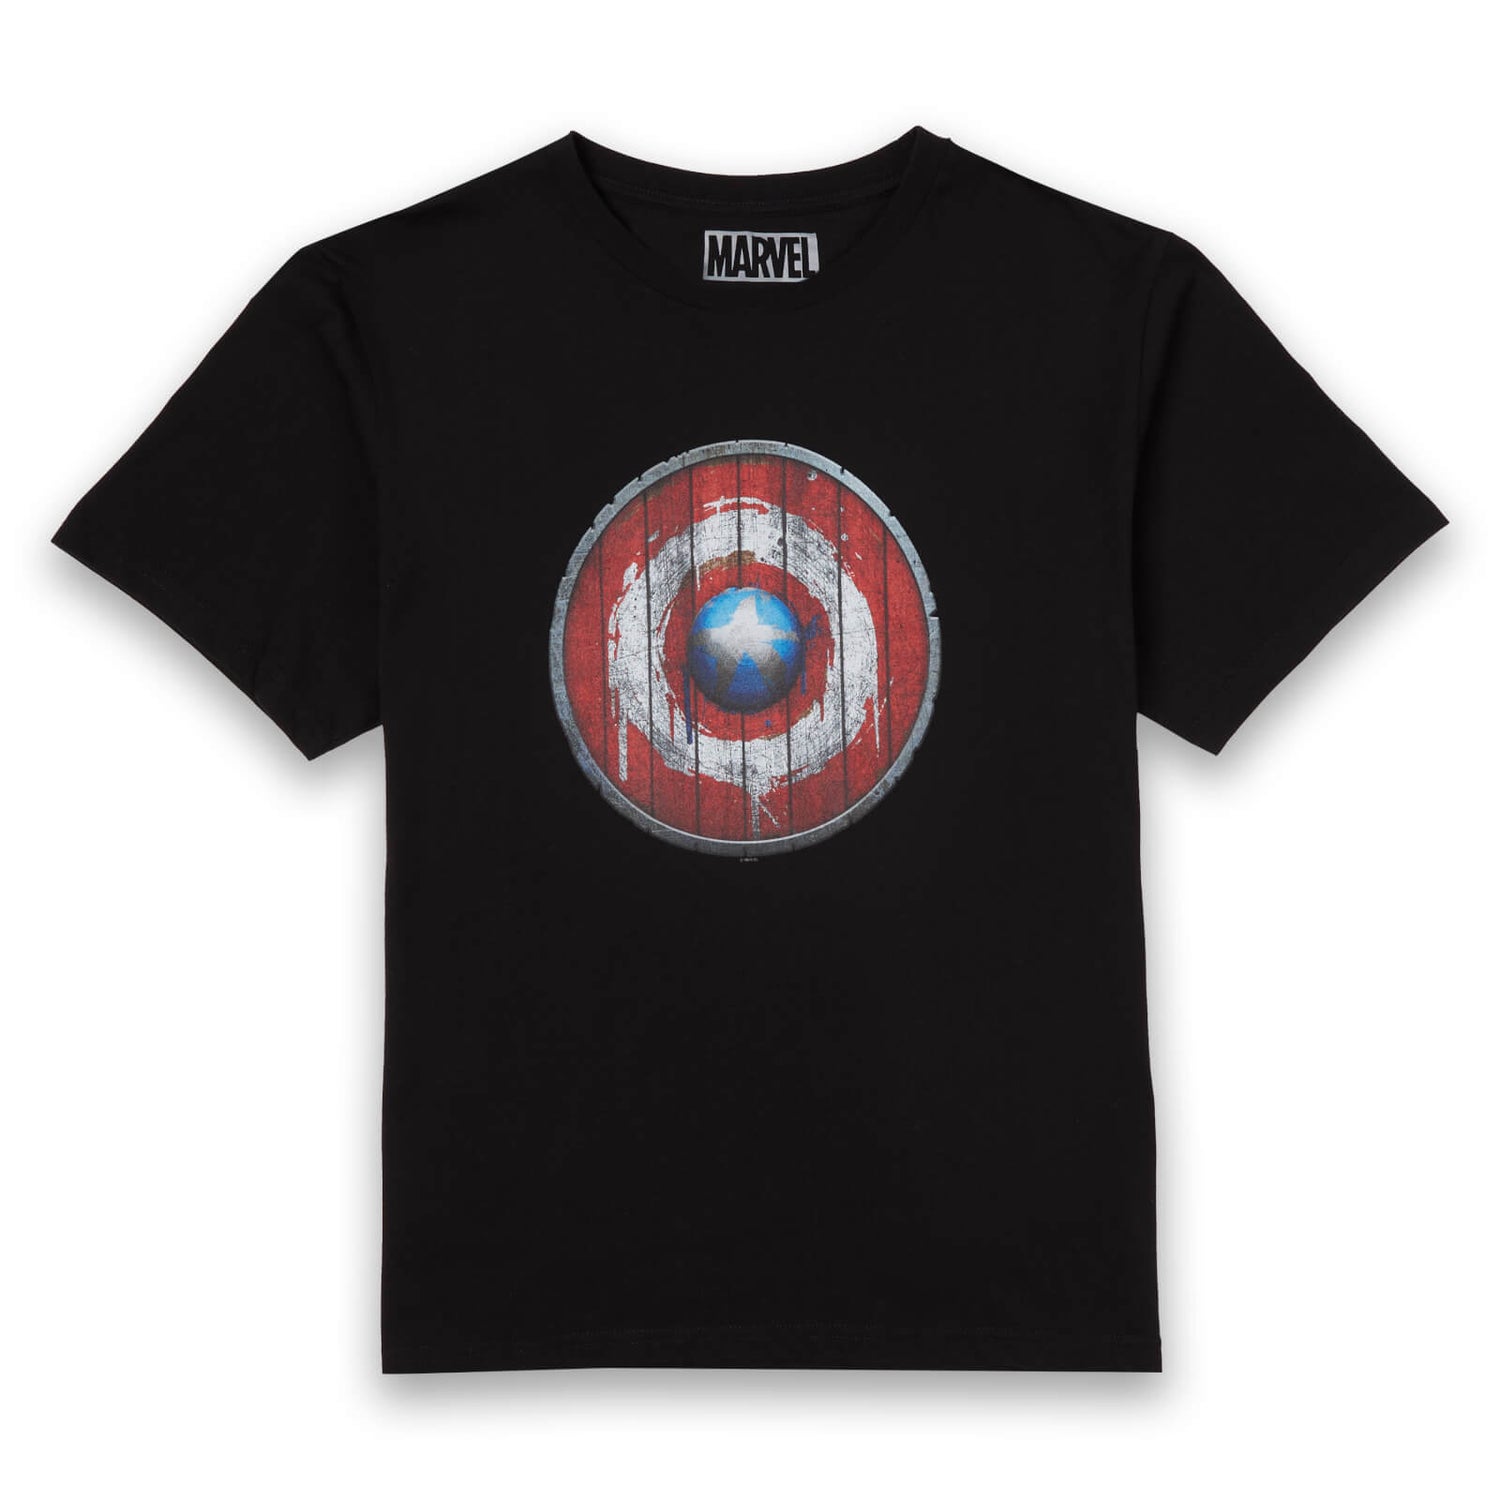 Marvel Captain America Wooden Shield Men's T-Shirt - Black